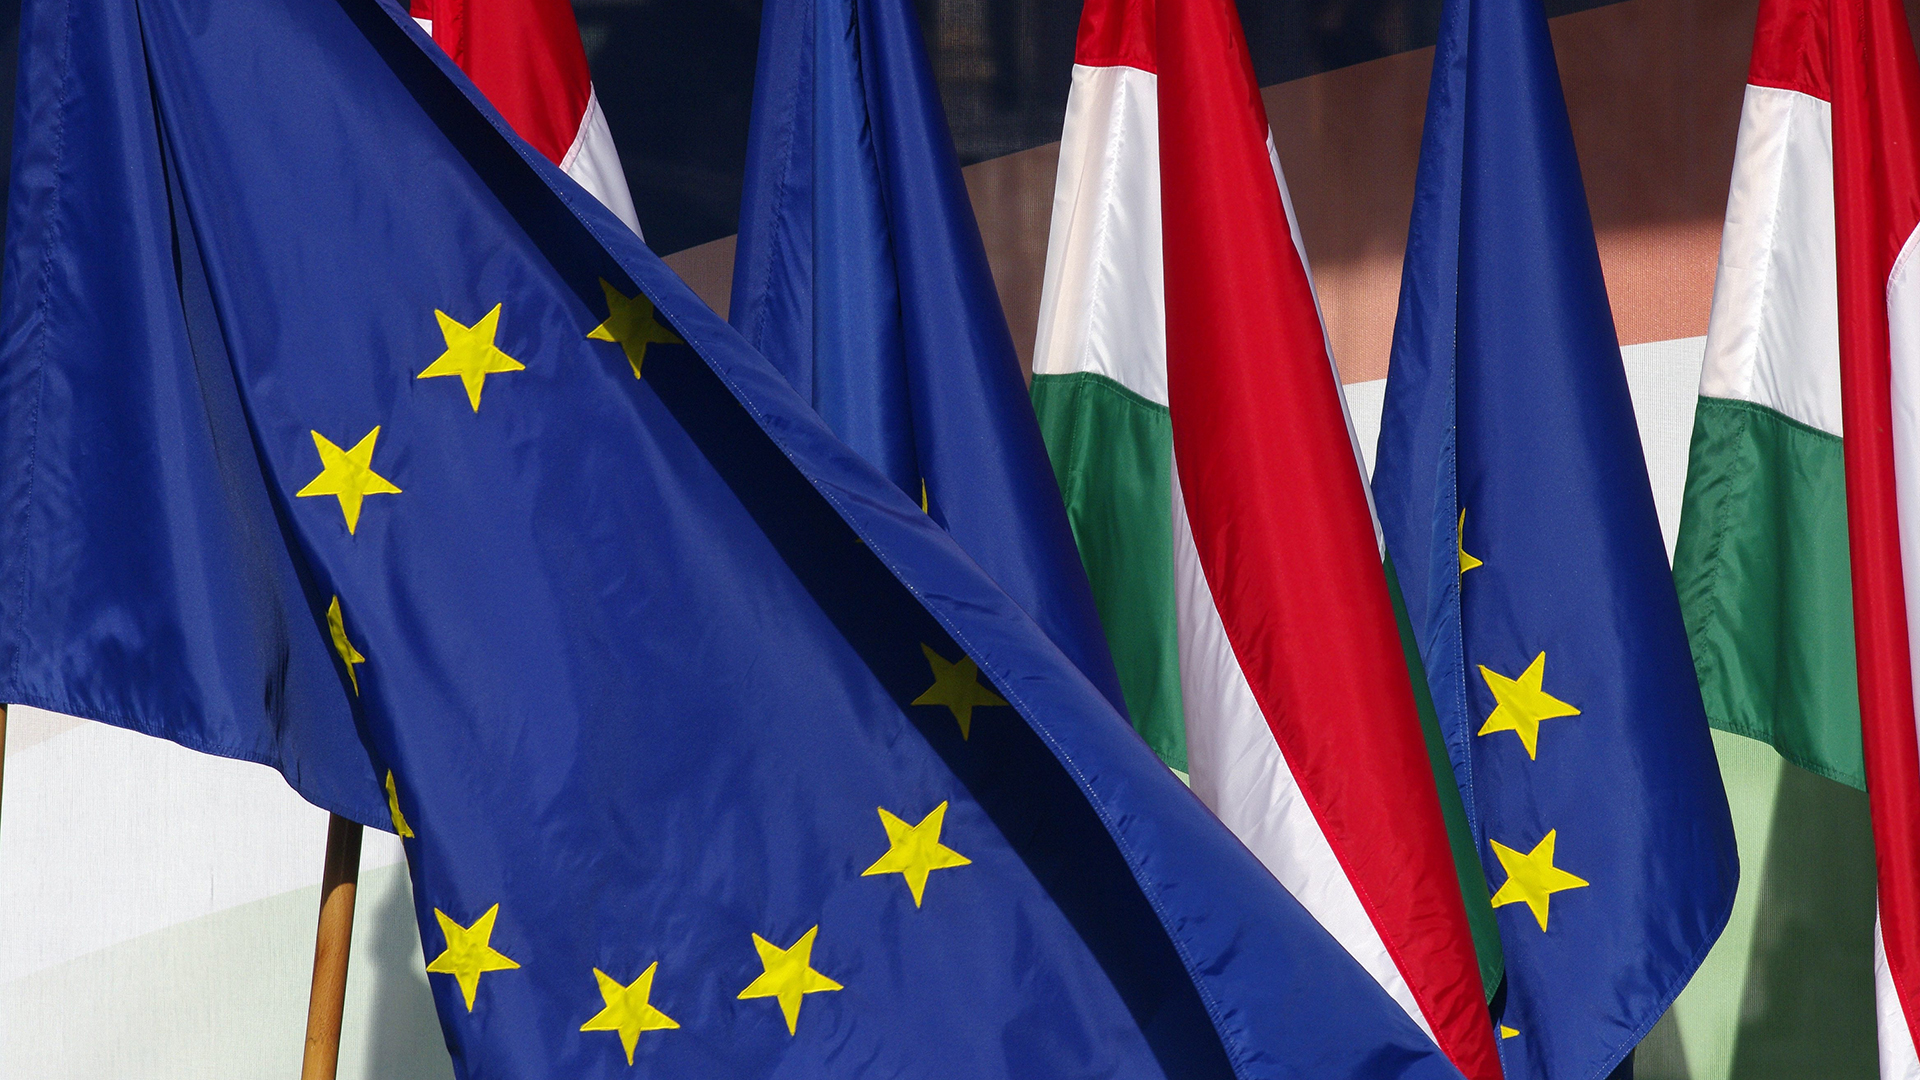 Die Flaggen der EU und Ungarns | picture alliance / JOKER